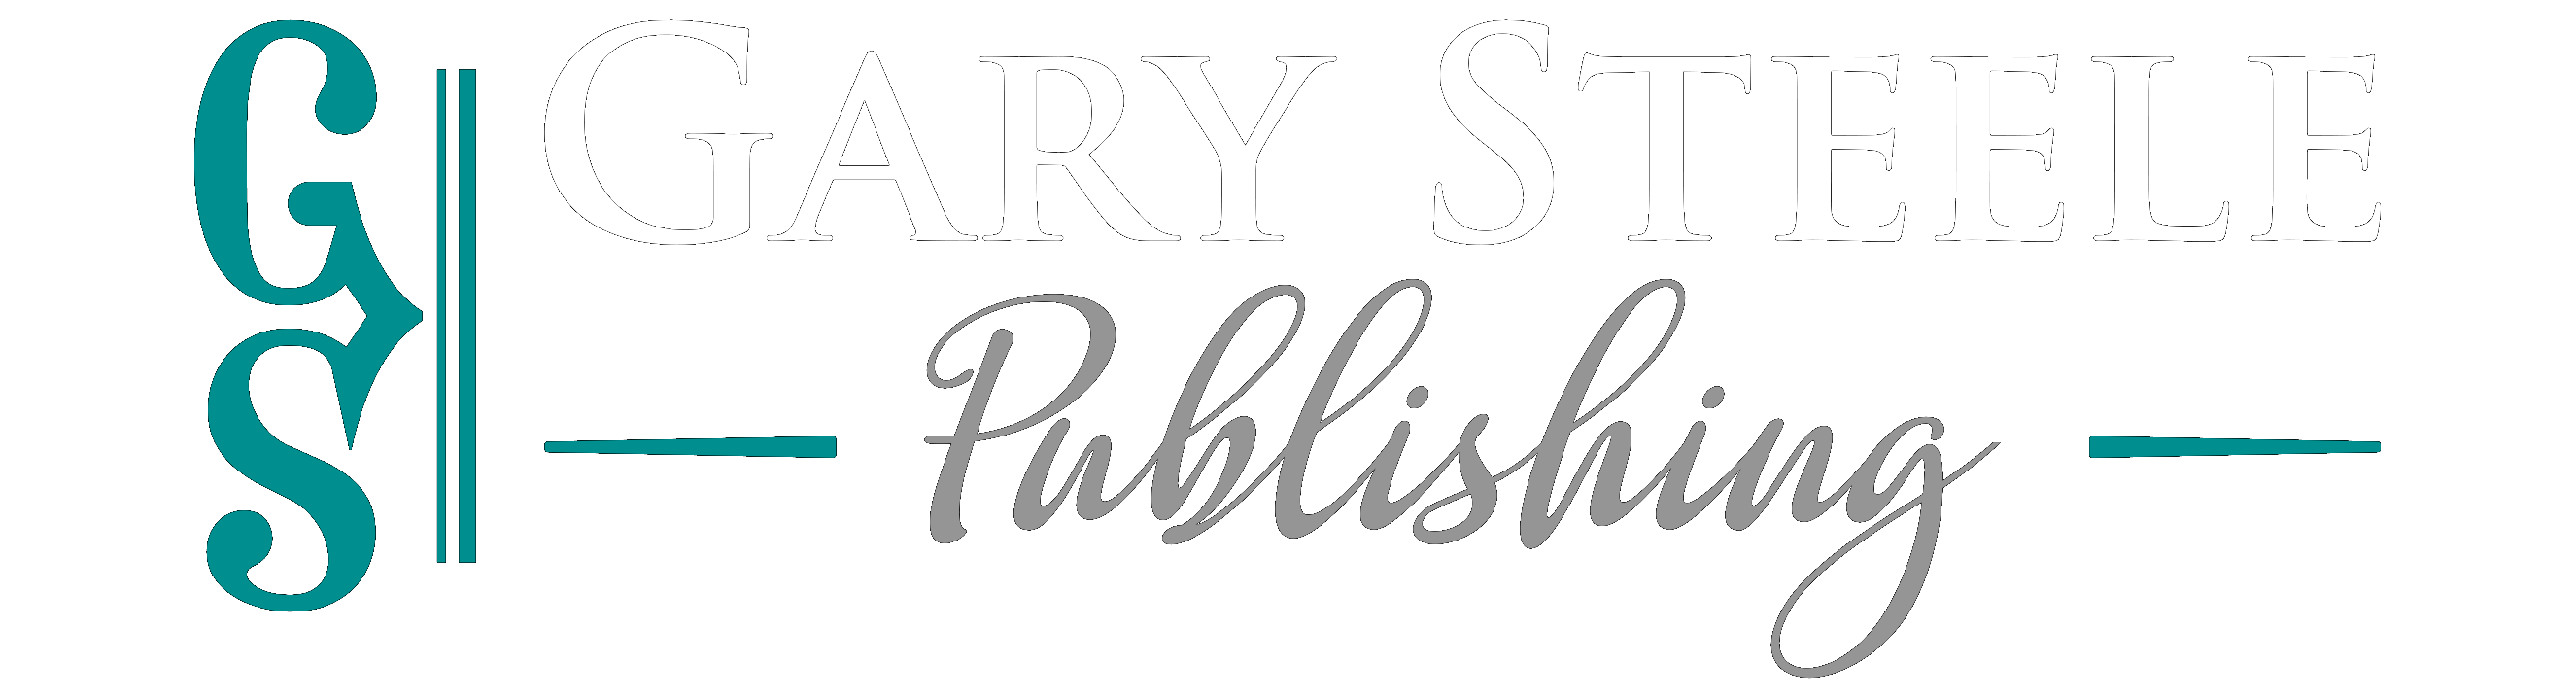 Gary Steele Publishing